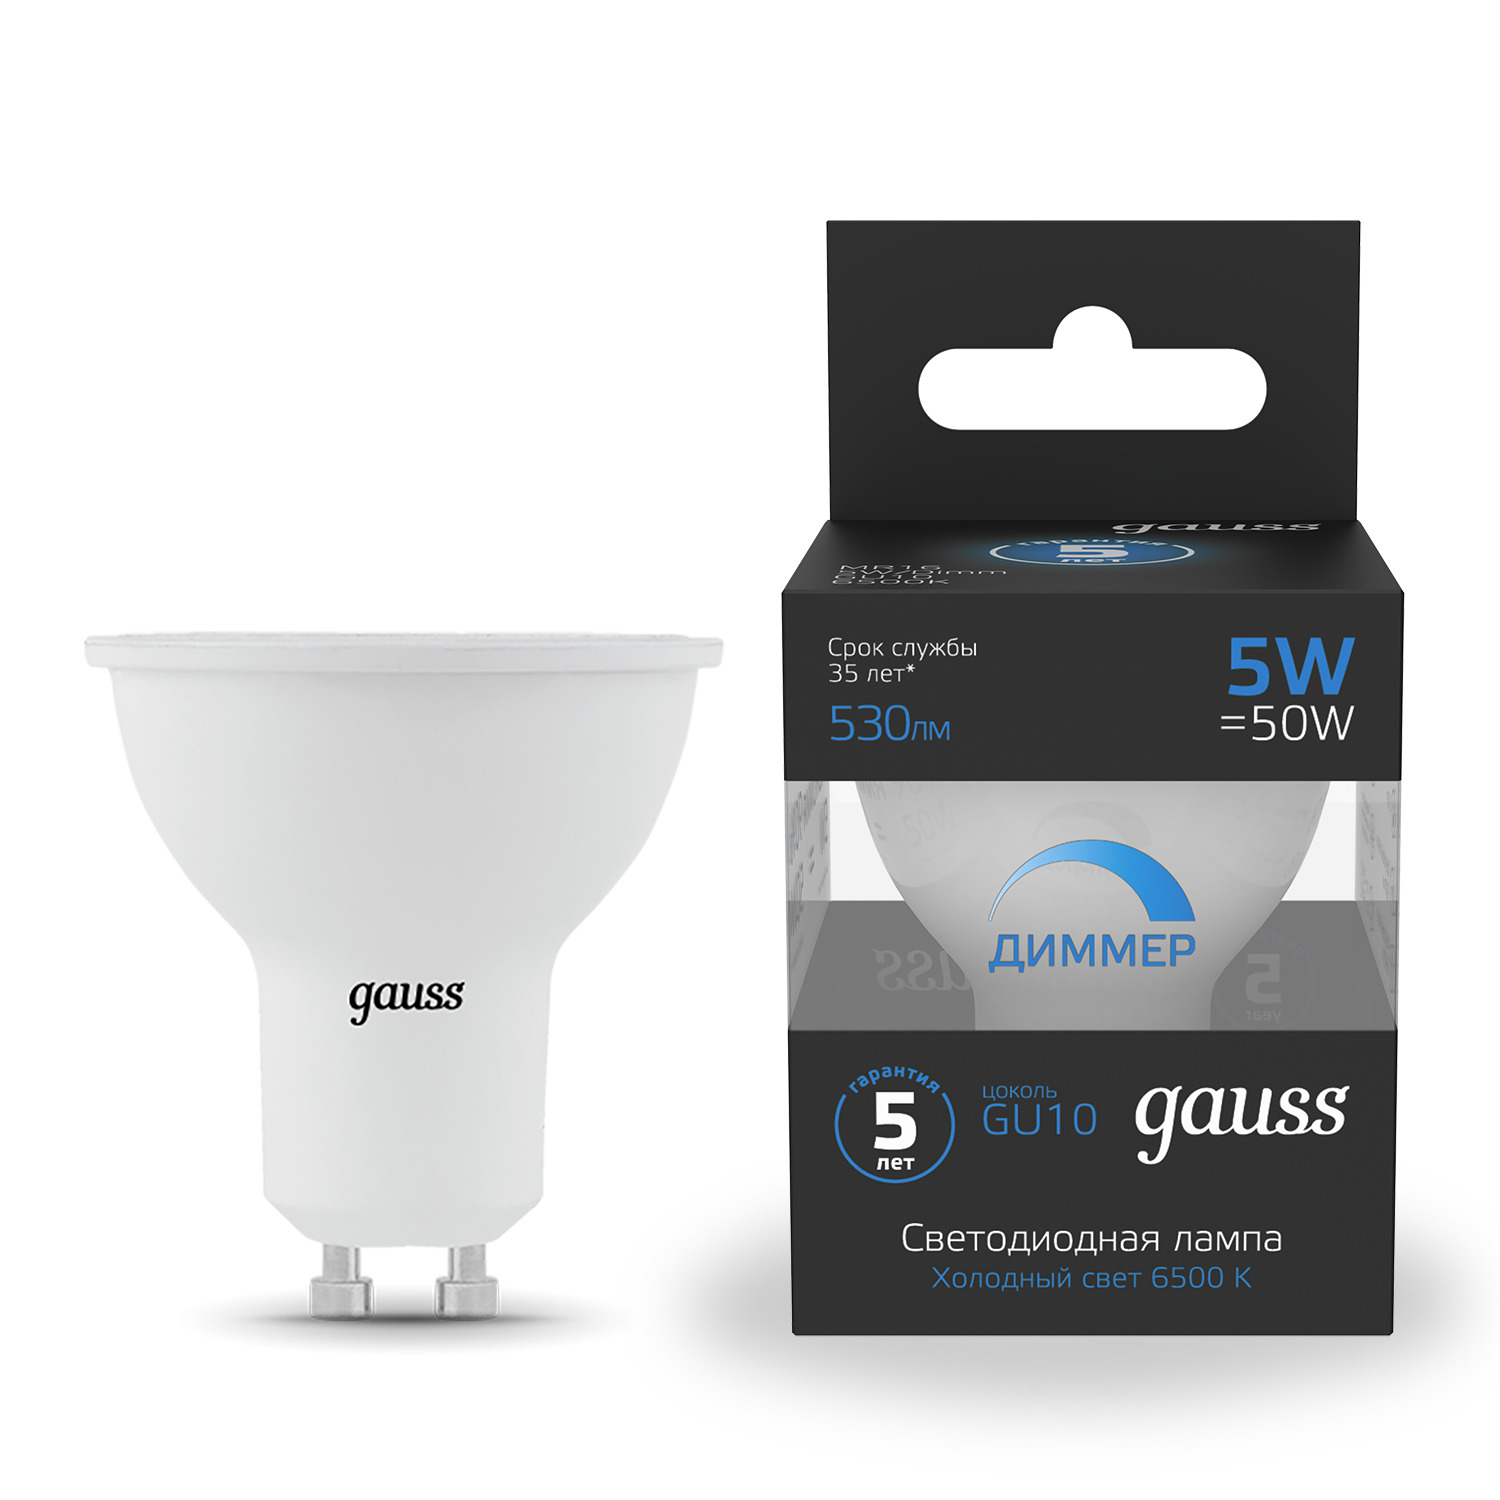 Лампа Gauss MR16 5W 530lm 6500K GU10 диммируемая LED